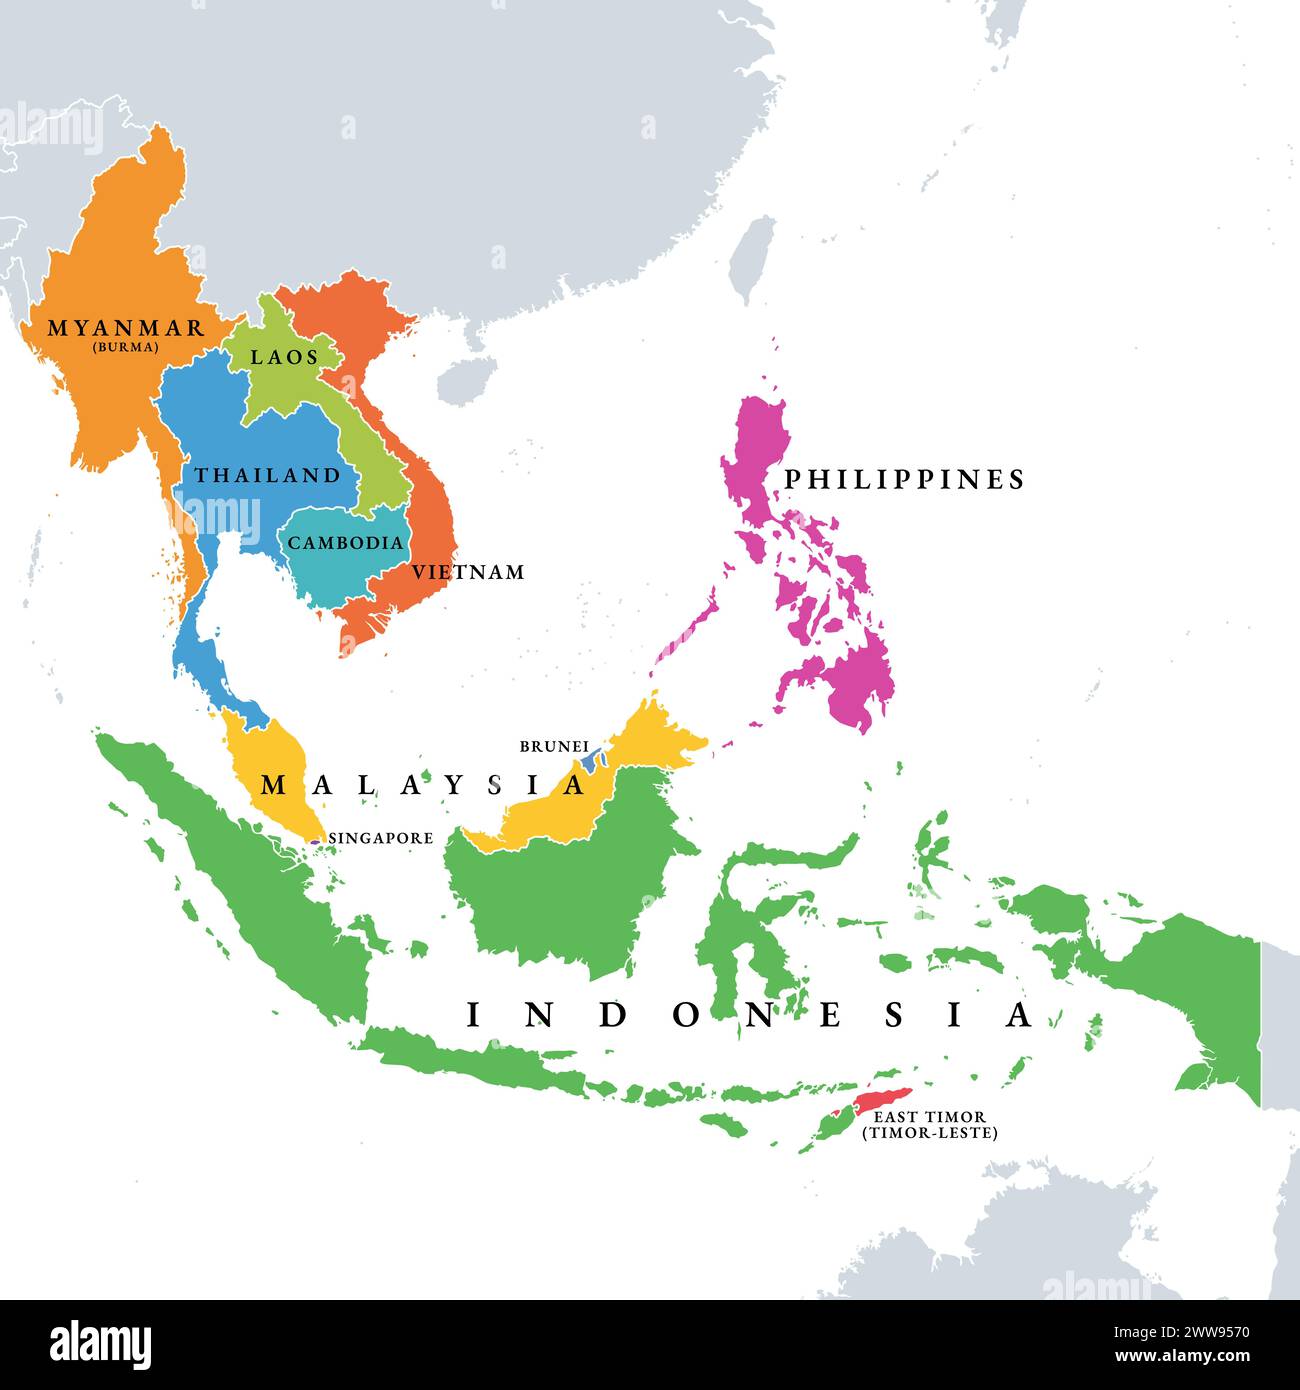 Paesi del sud-est asiatico, mappa politica. Regione geografica dell’Asia, delimitata dall’Asia orientale e meridionale, dall’Oceania, dall’Oceano Pacifico e dall’Australia. Foto Stock